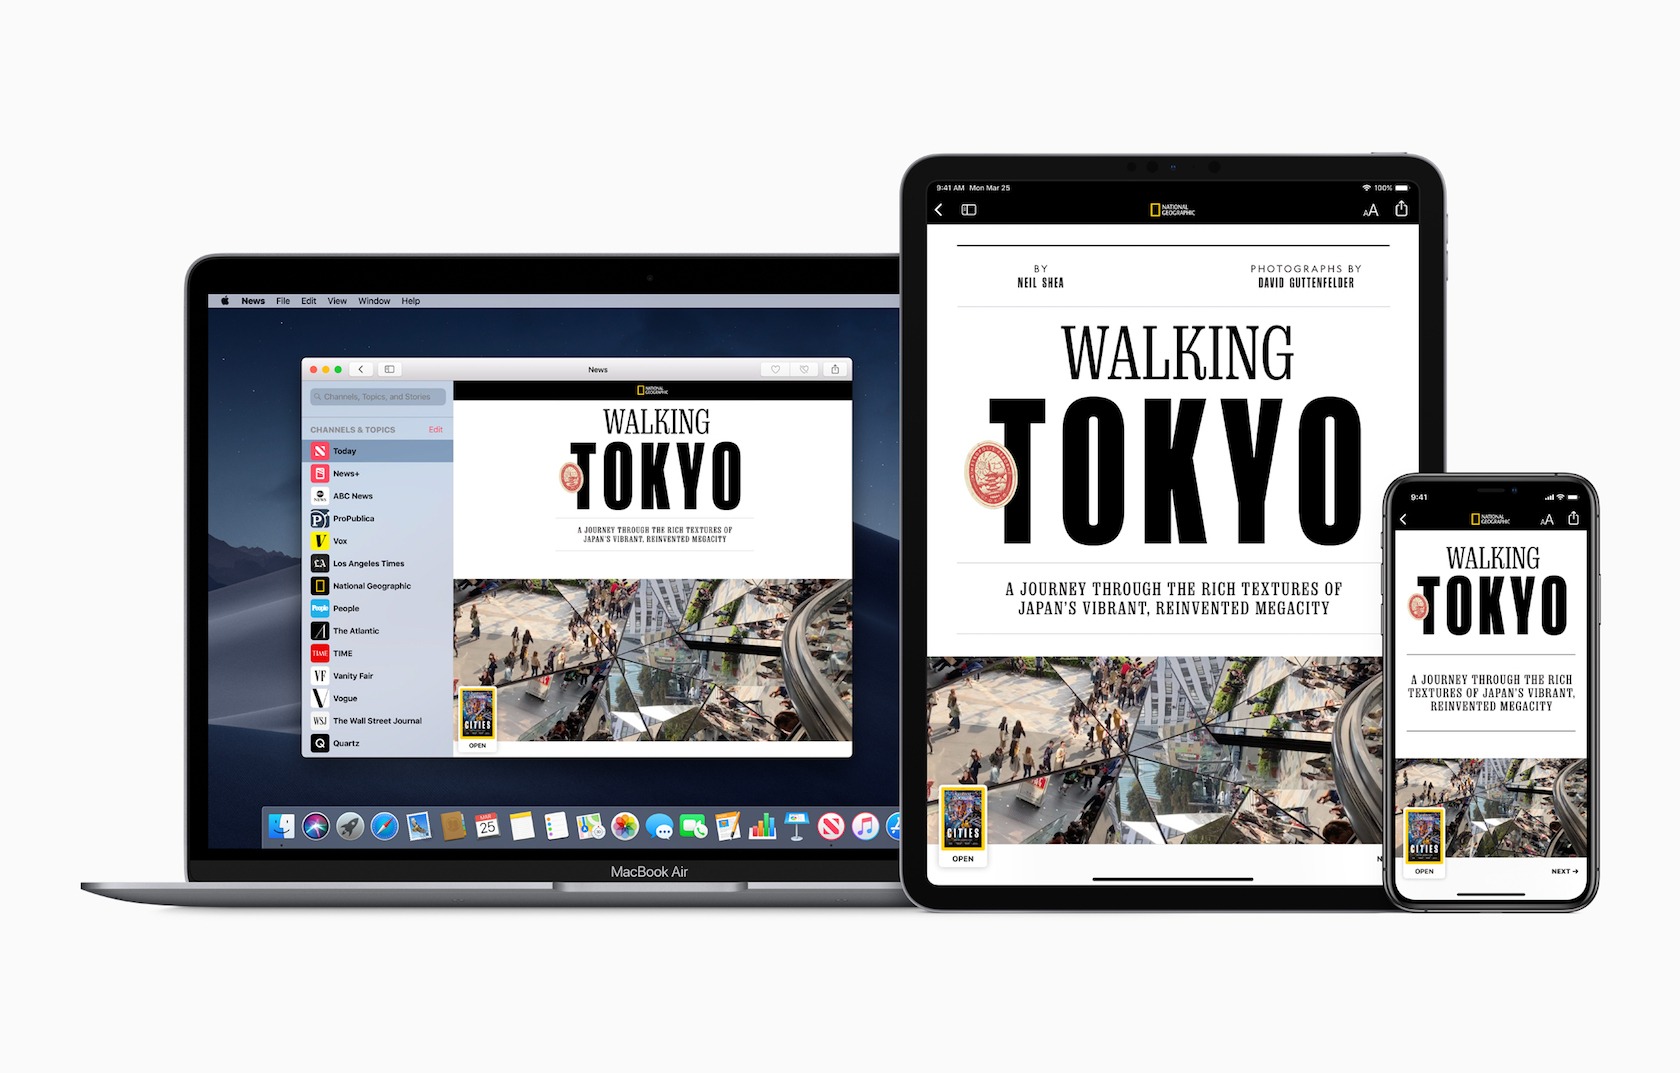 Apple news plus natgeo iphone ip